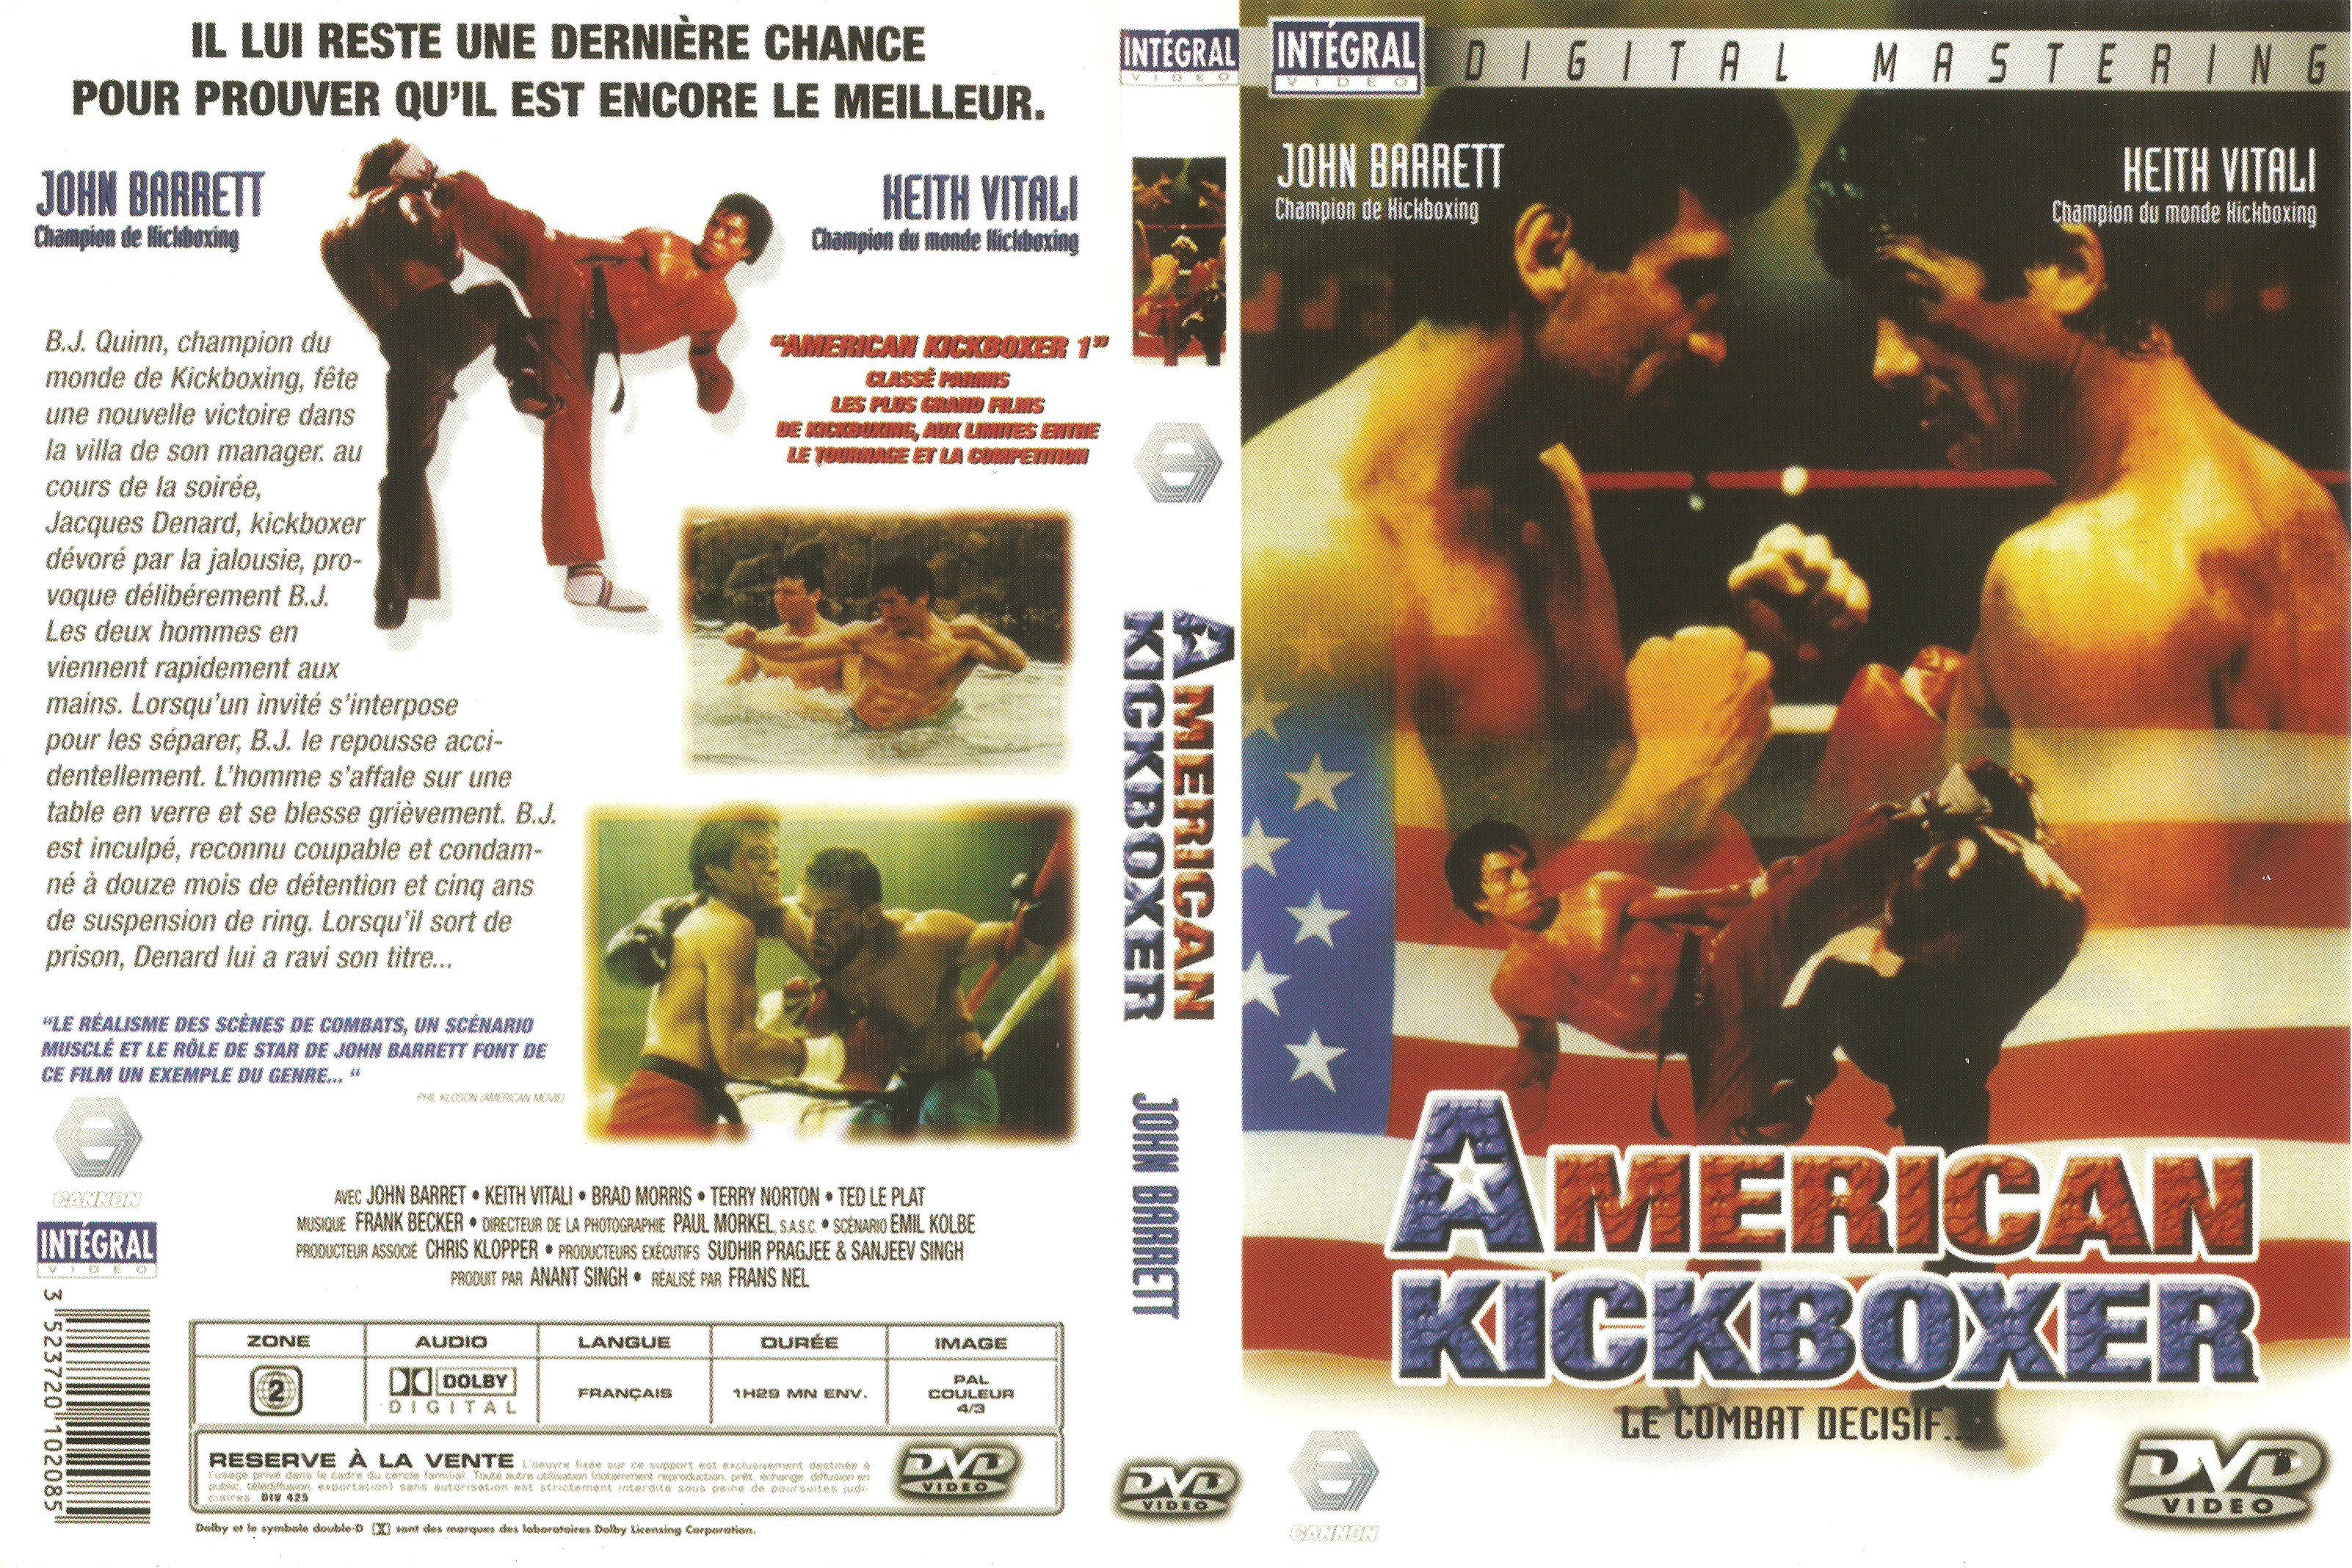 Jaquette DVD American kickboxer v3